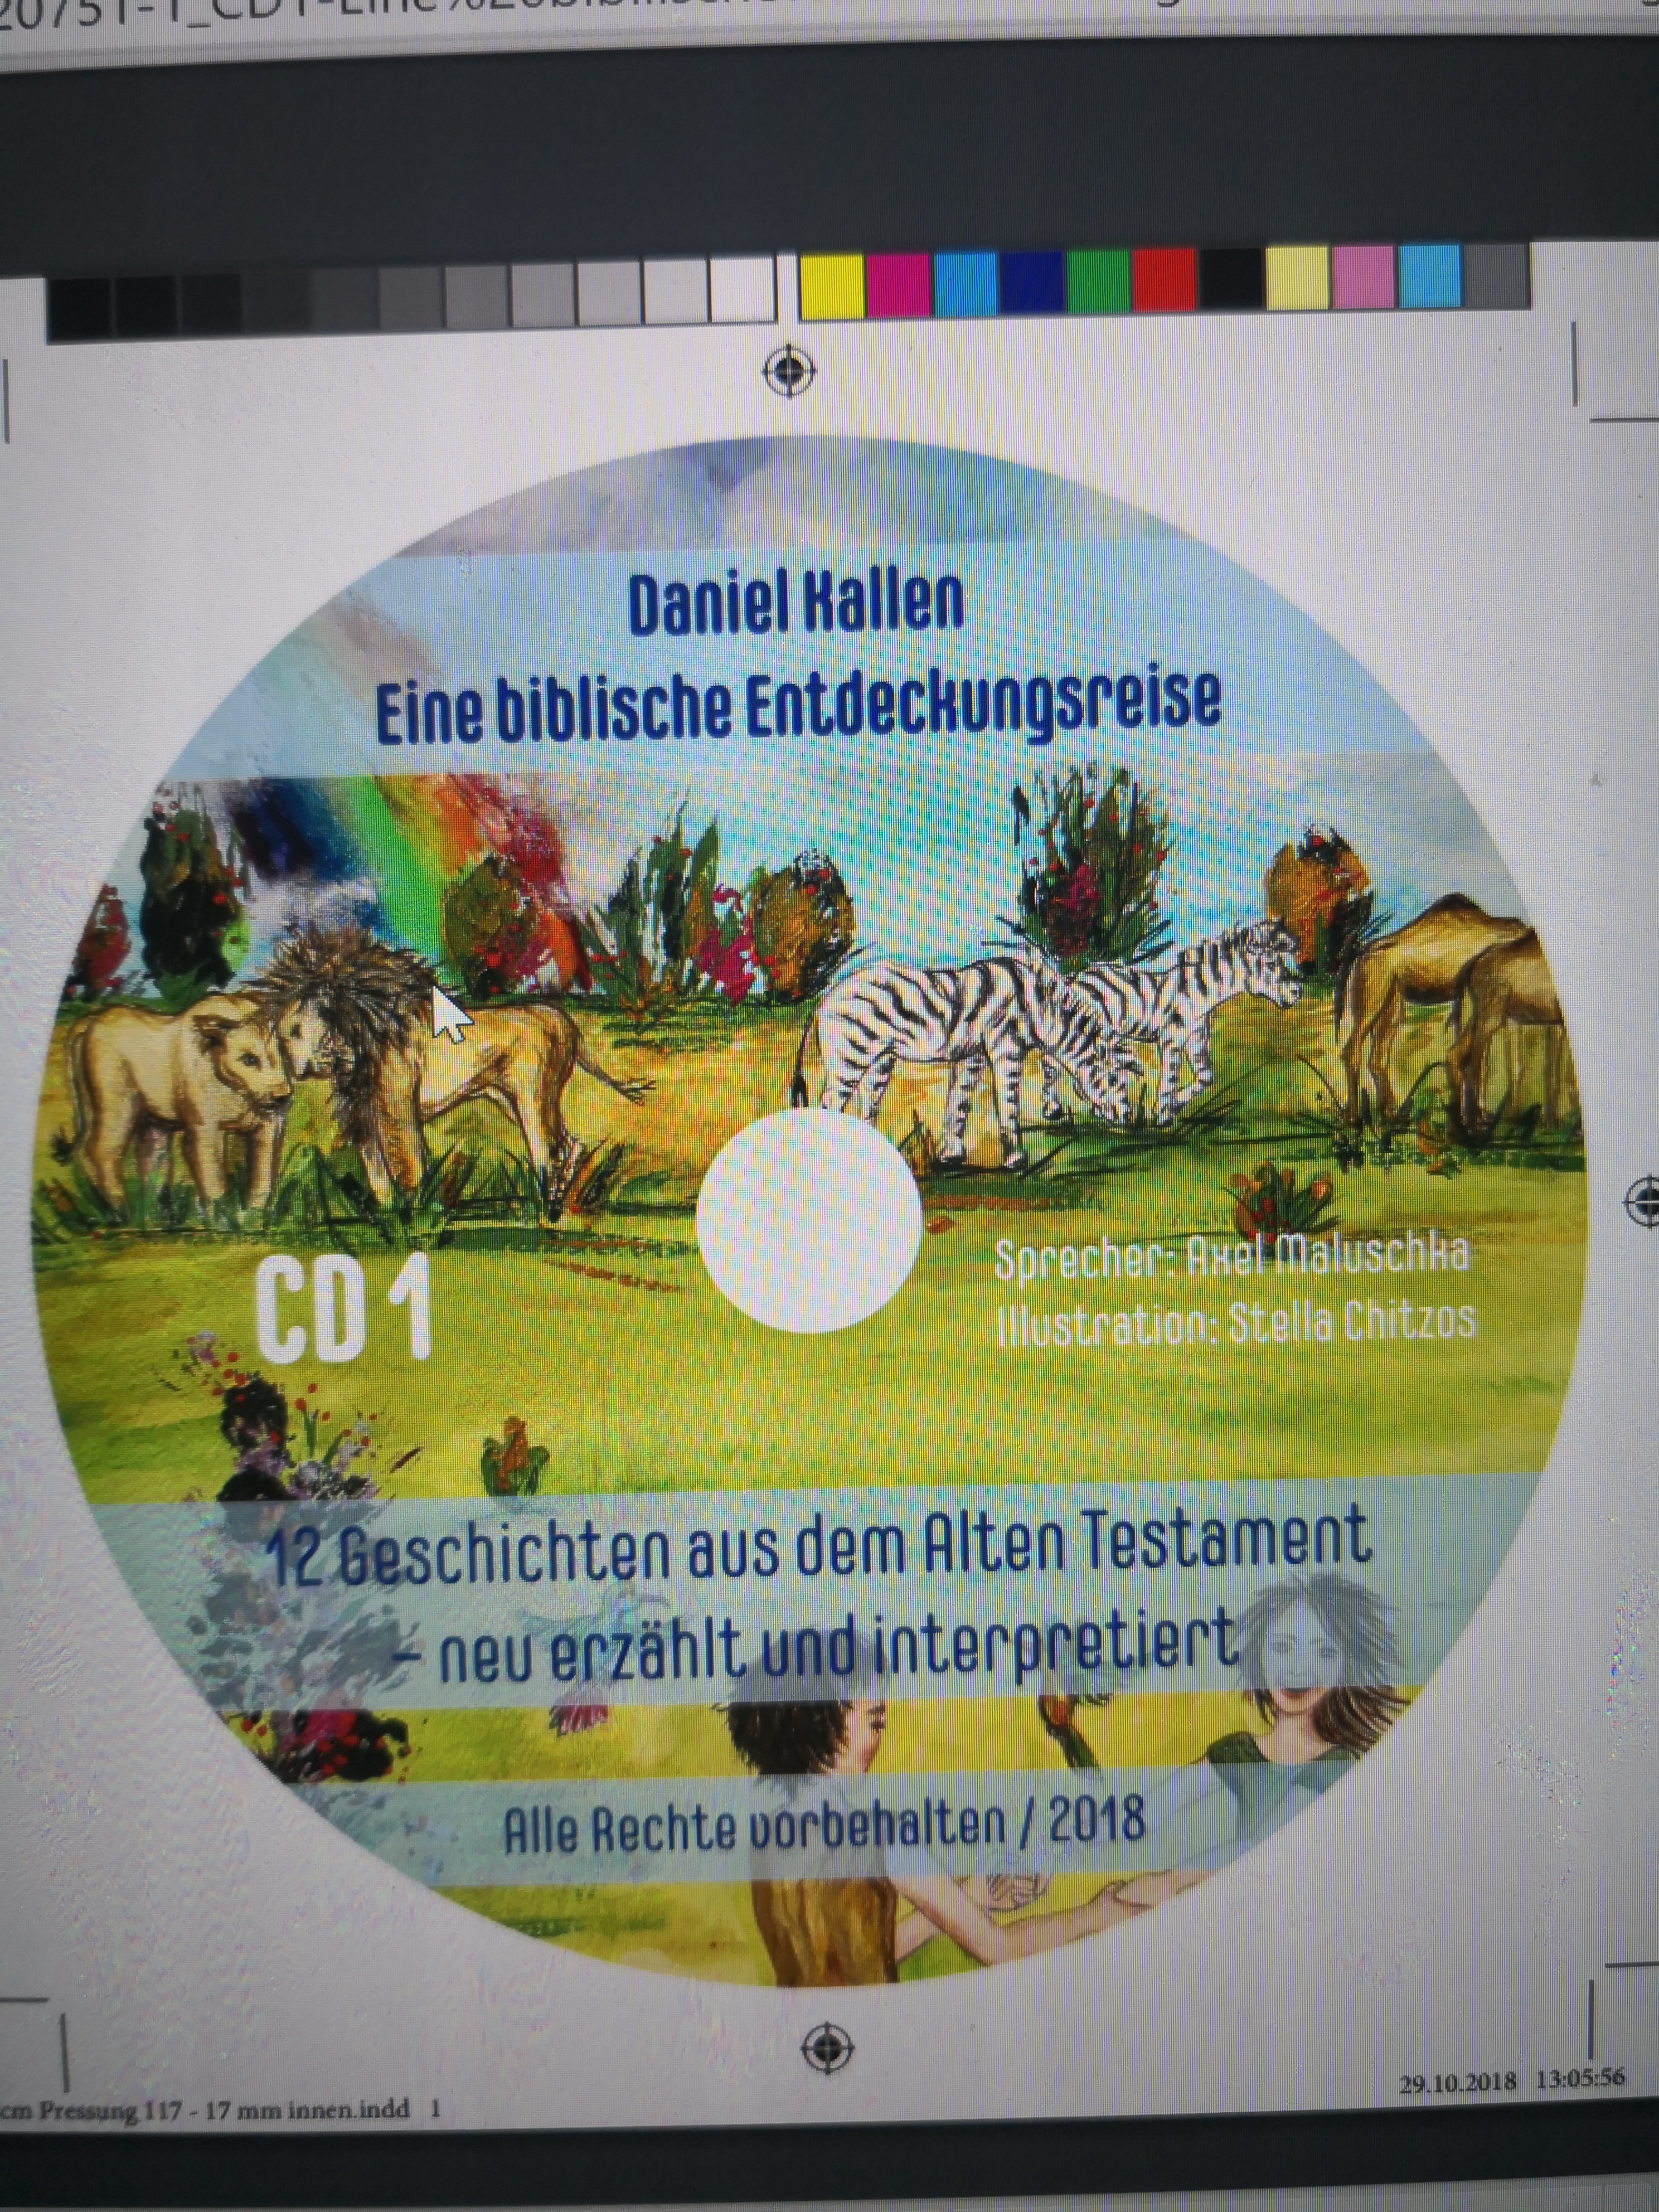 Audio-Book: Die Bibel - Eine Entdeckungsreise / Text: Daniel Kallen / Sprecher: Axel Maluschka